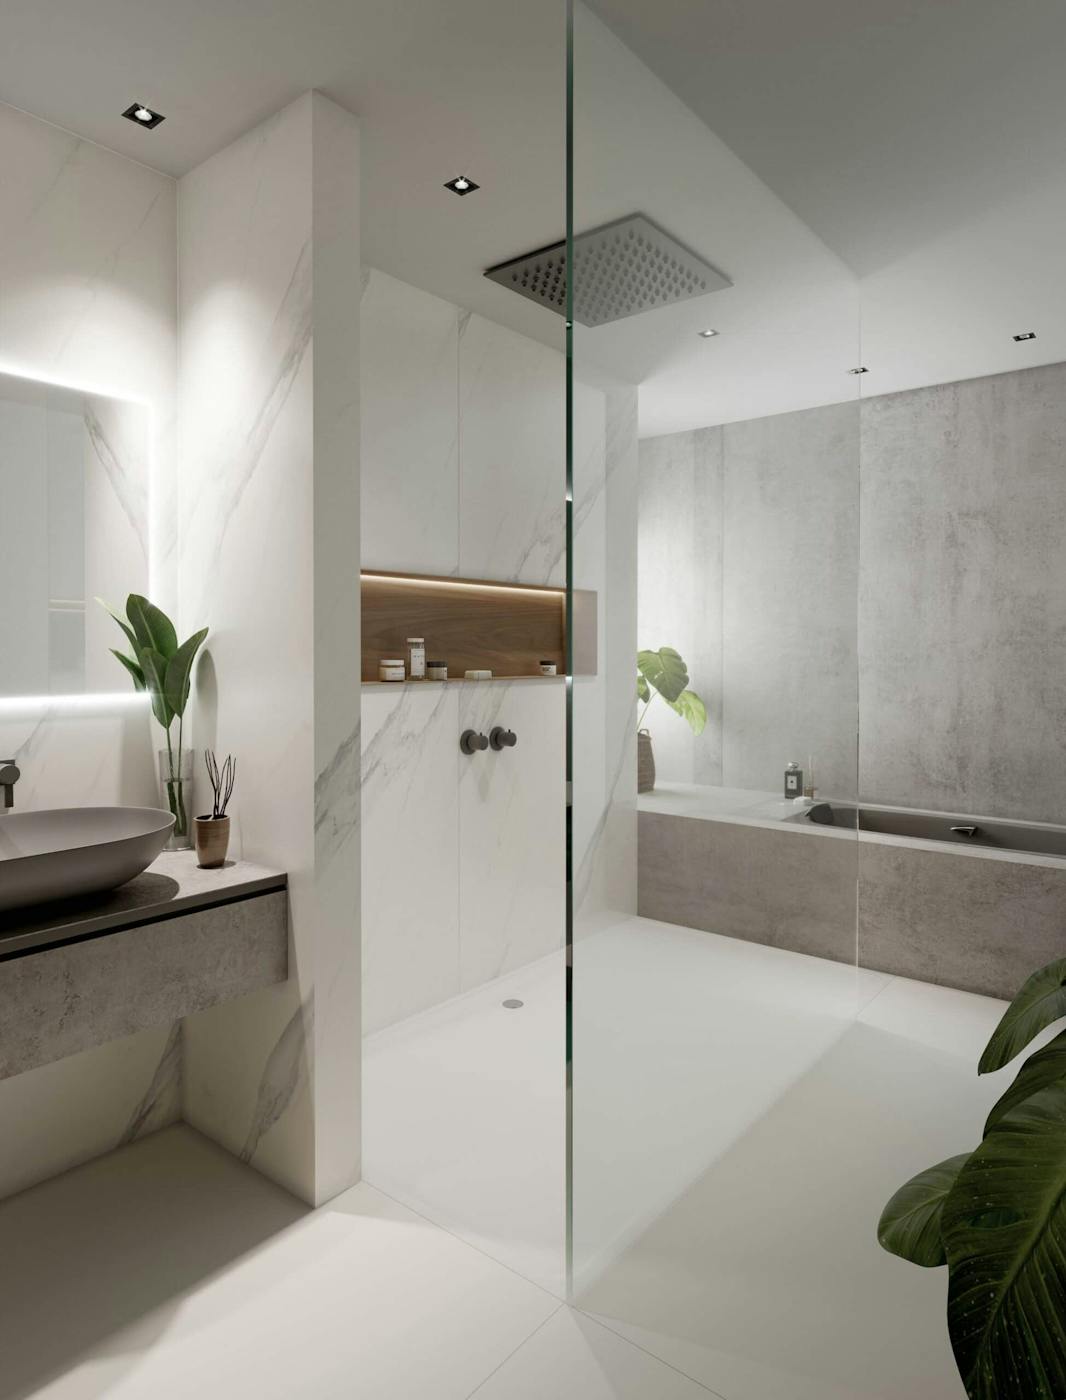 Vijf coole ontwerp ideeën voor grijze en witte badkamers